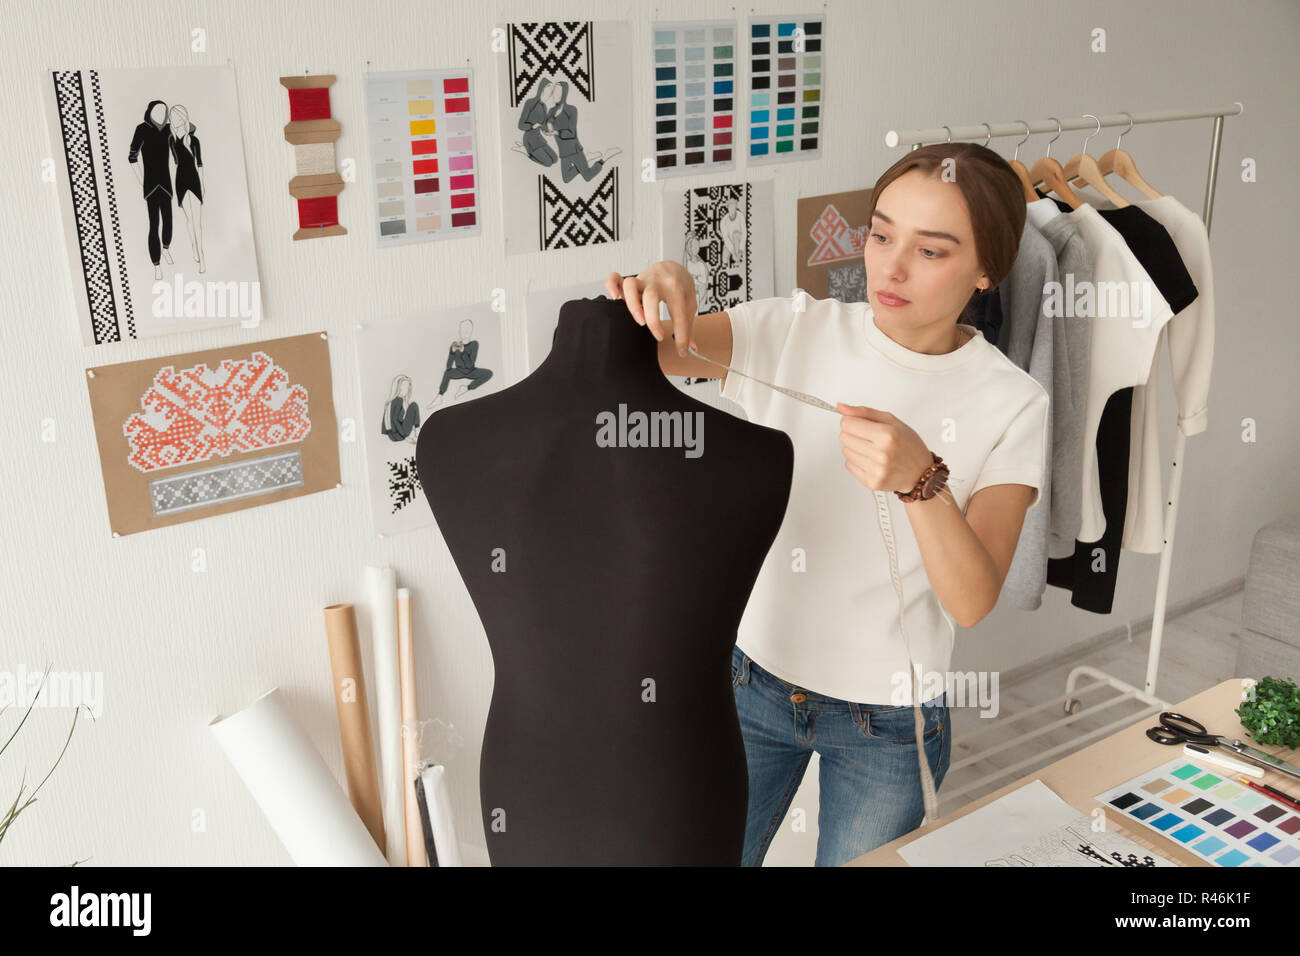 Diseñador de ropa femenina tomando mediciones, maniquí ficticia Foto de stock